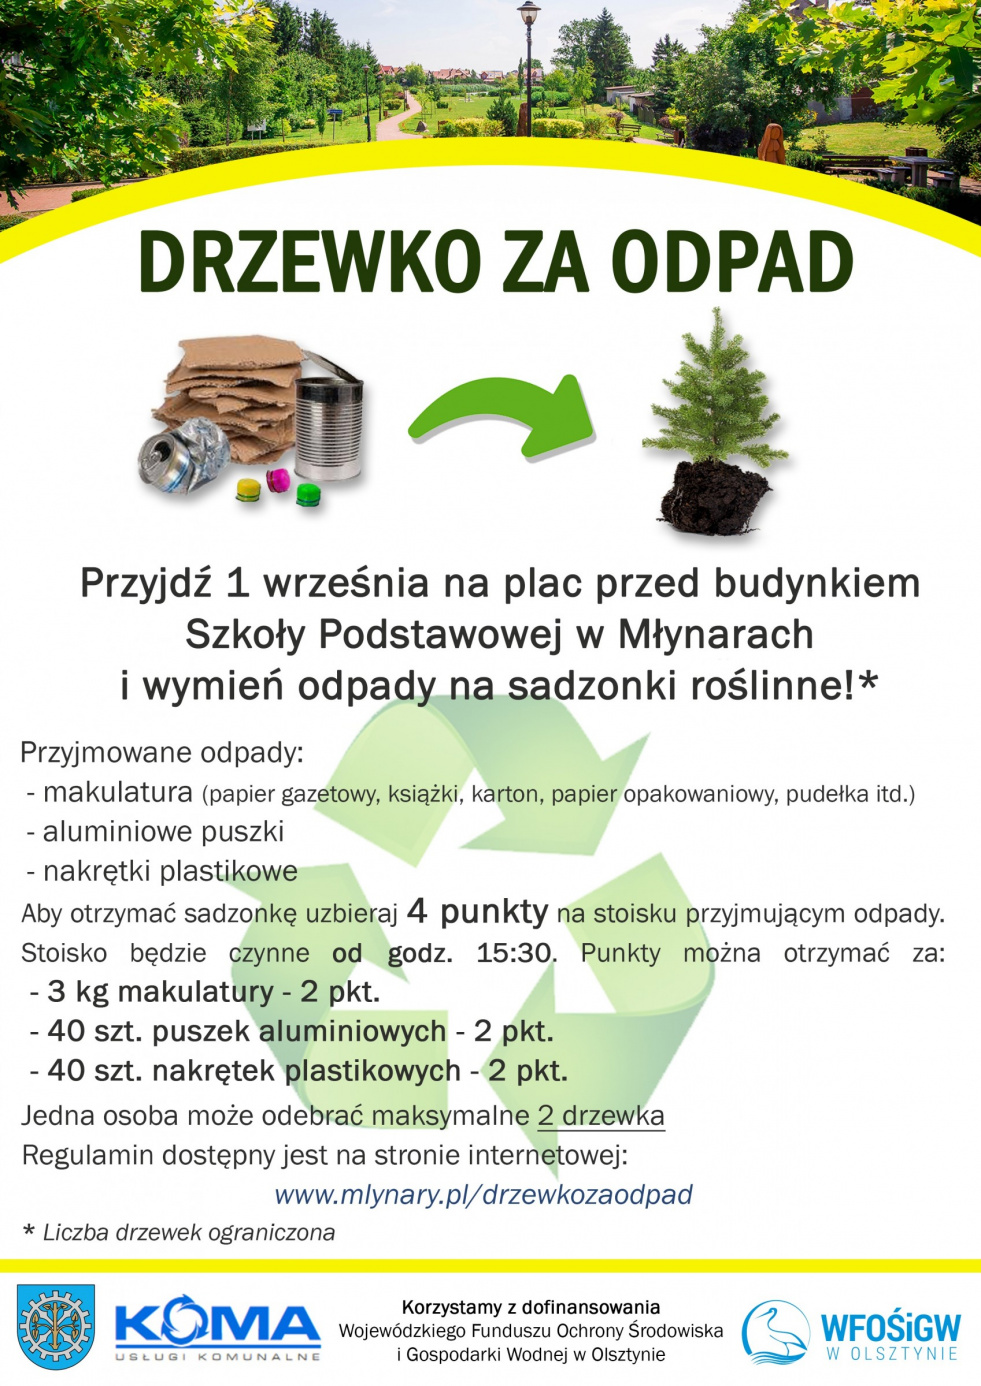 Akcja ekologiczna "Drzewko za odpad"